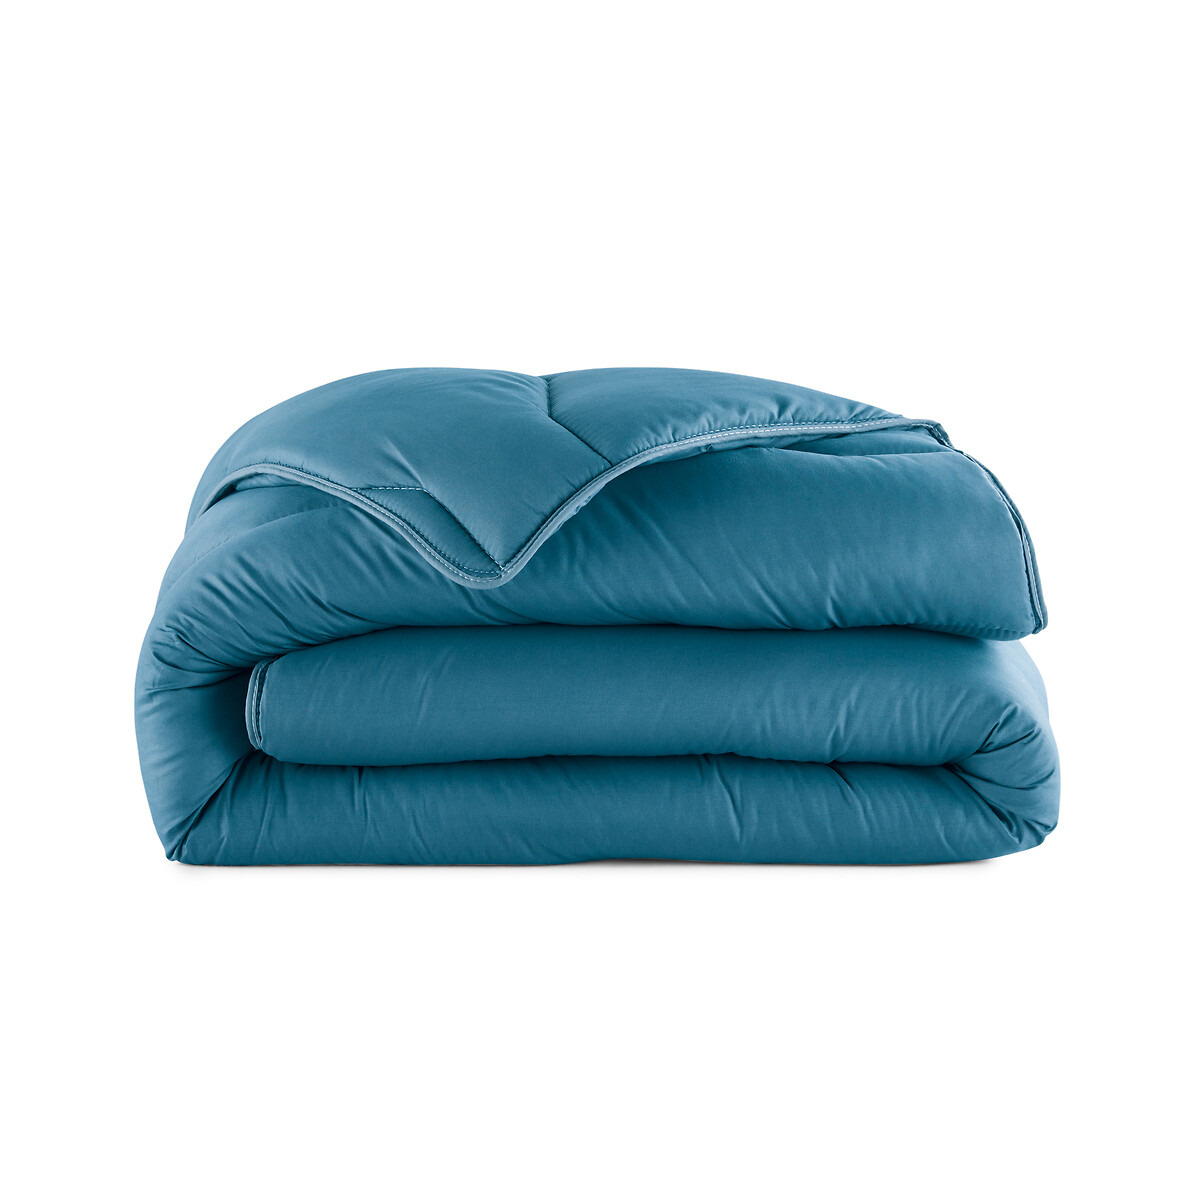 Одеяло LA REDOUTE INTERIEURS 100 полиэстер специально для лета 140 x 200 см синий, размер 140 x 200 см - фото 2